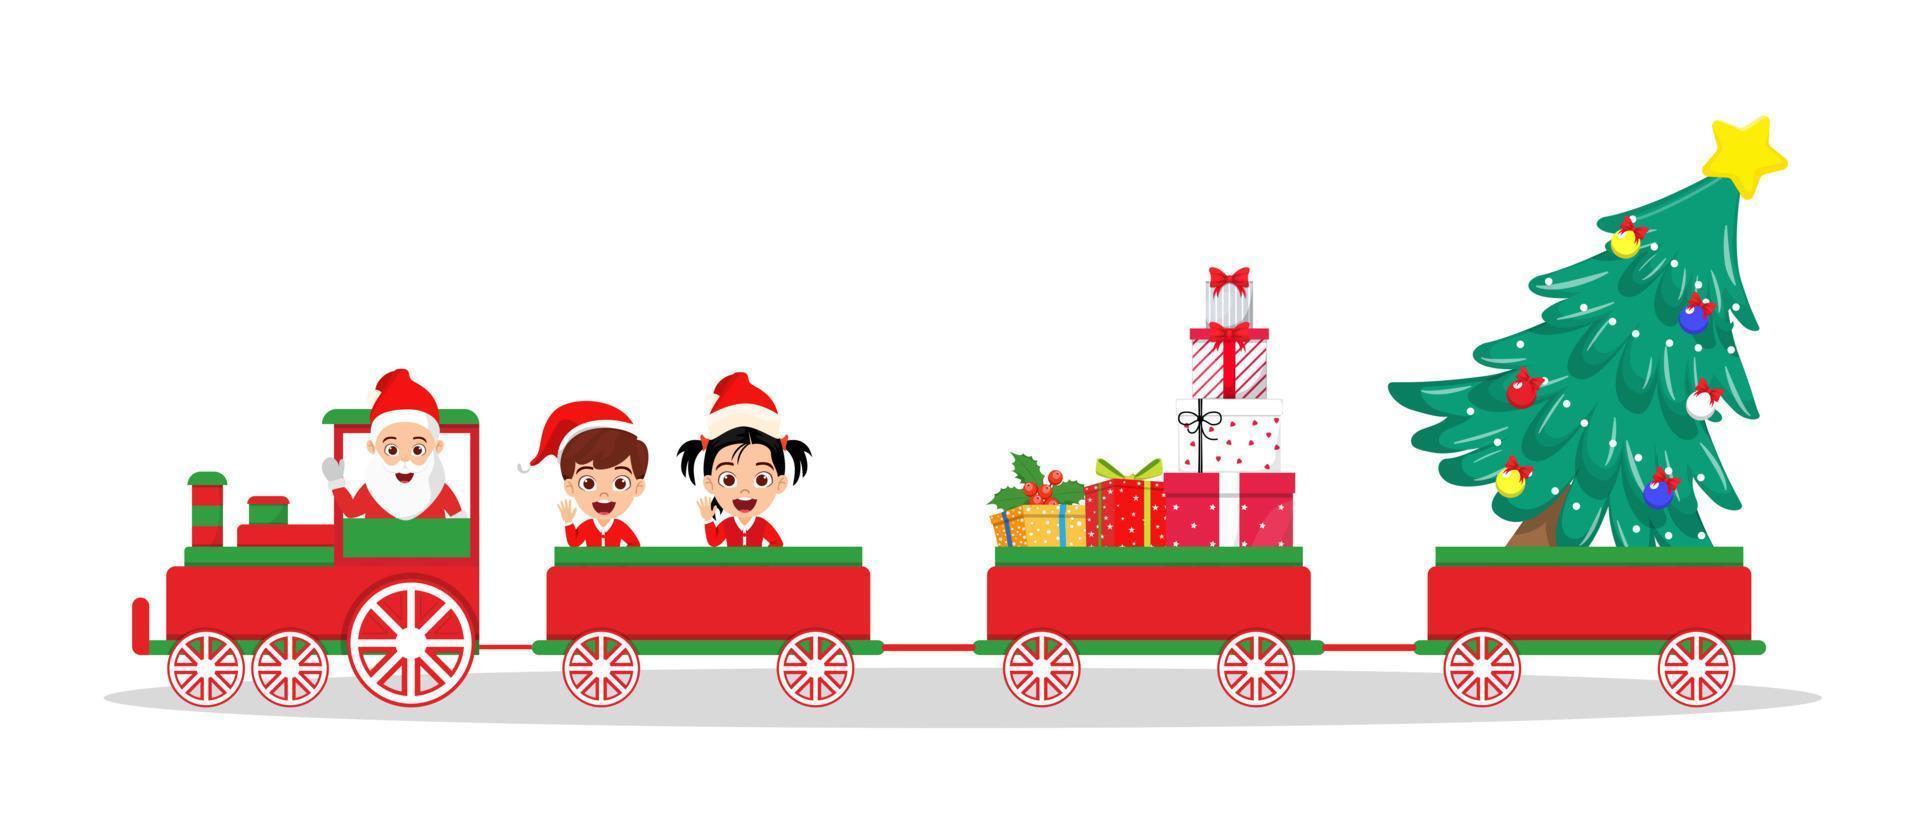 süßer schöner Weihnachtsmann-Charakter und Kinderjungen- und Mädchencharakter mit Weihnachtsoutfit und im Weihnachtszug mit Geschenkboxen vektor